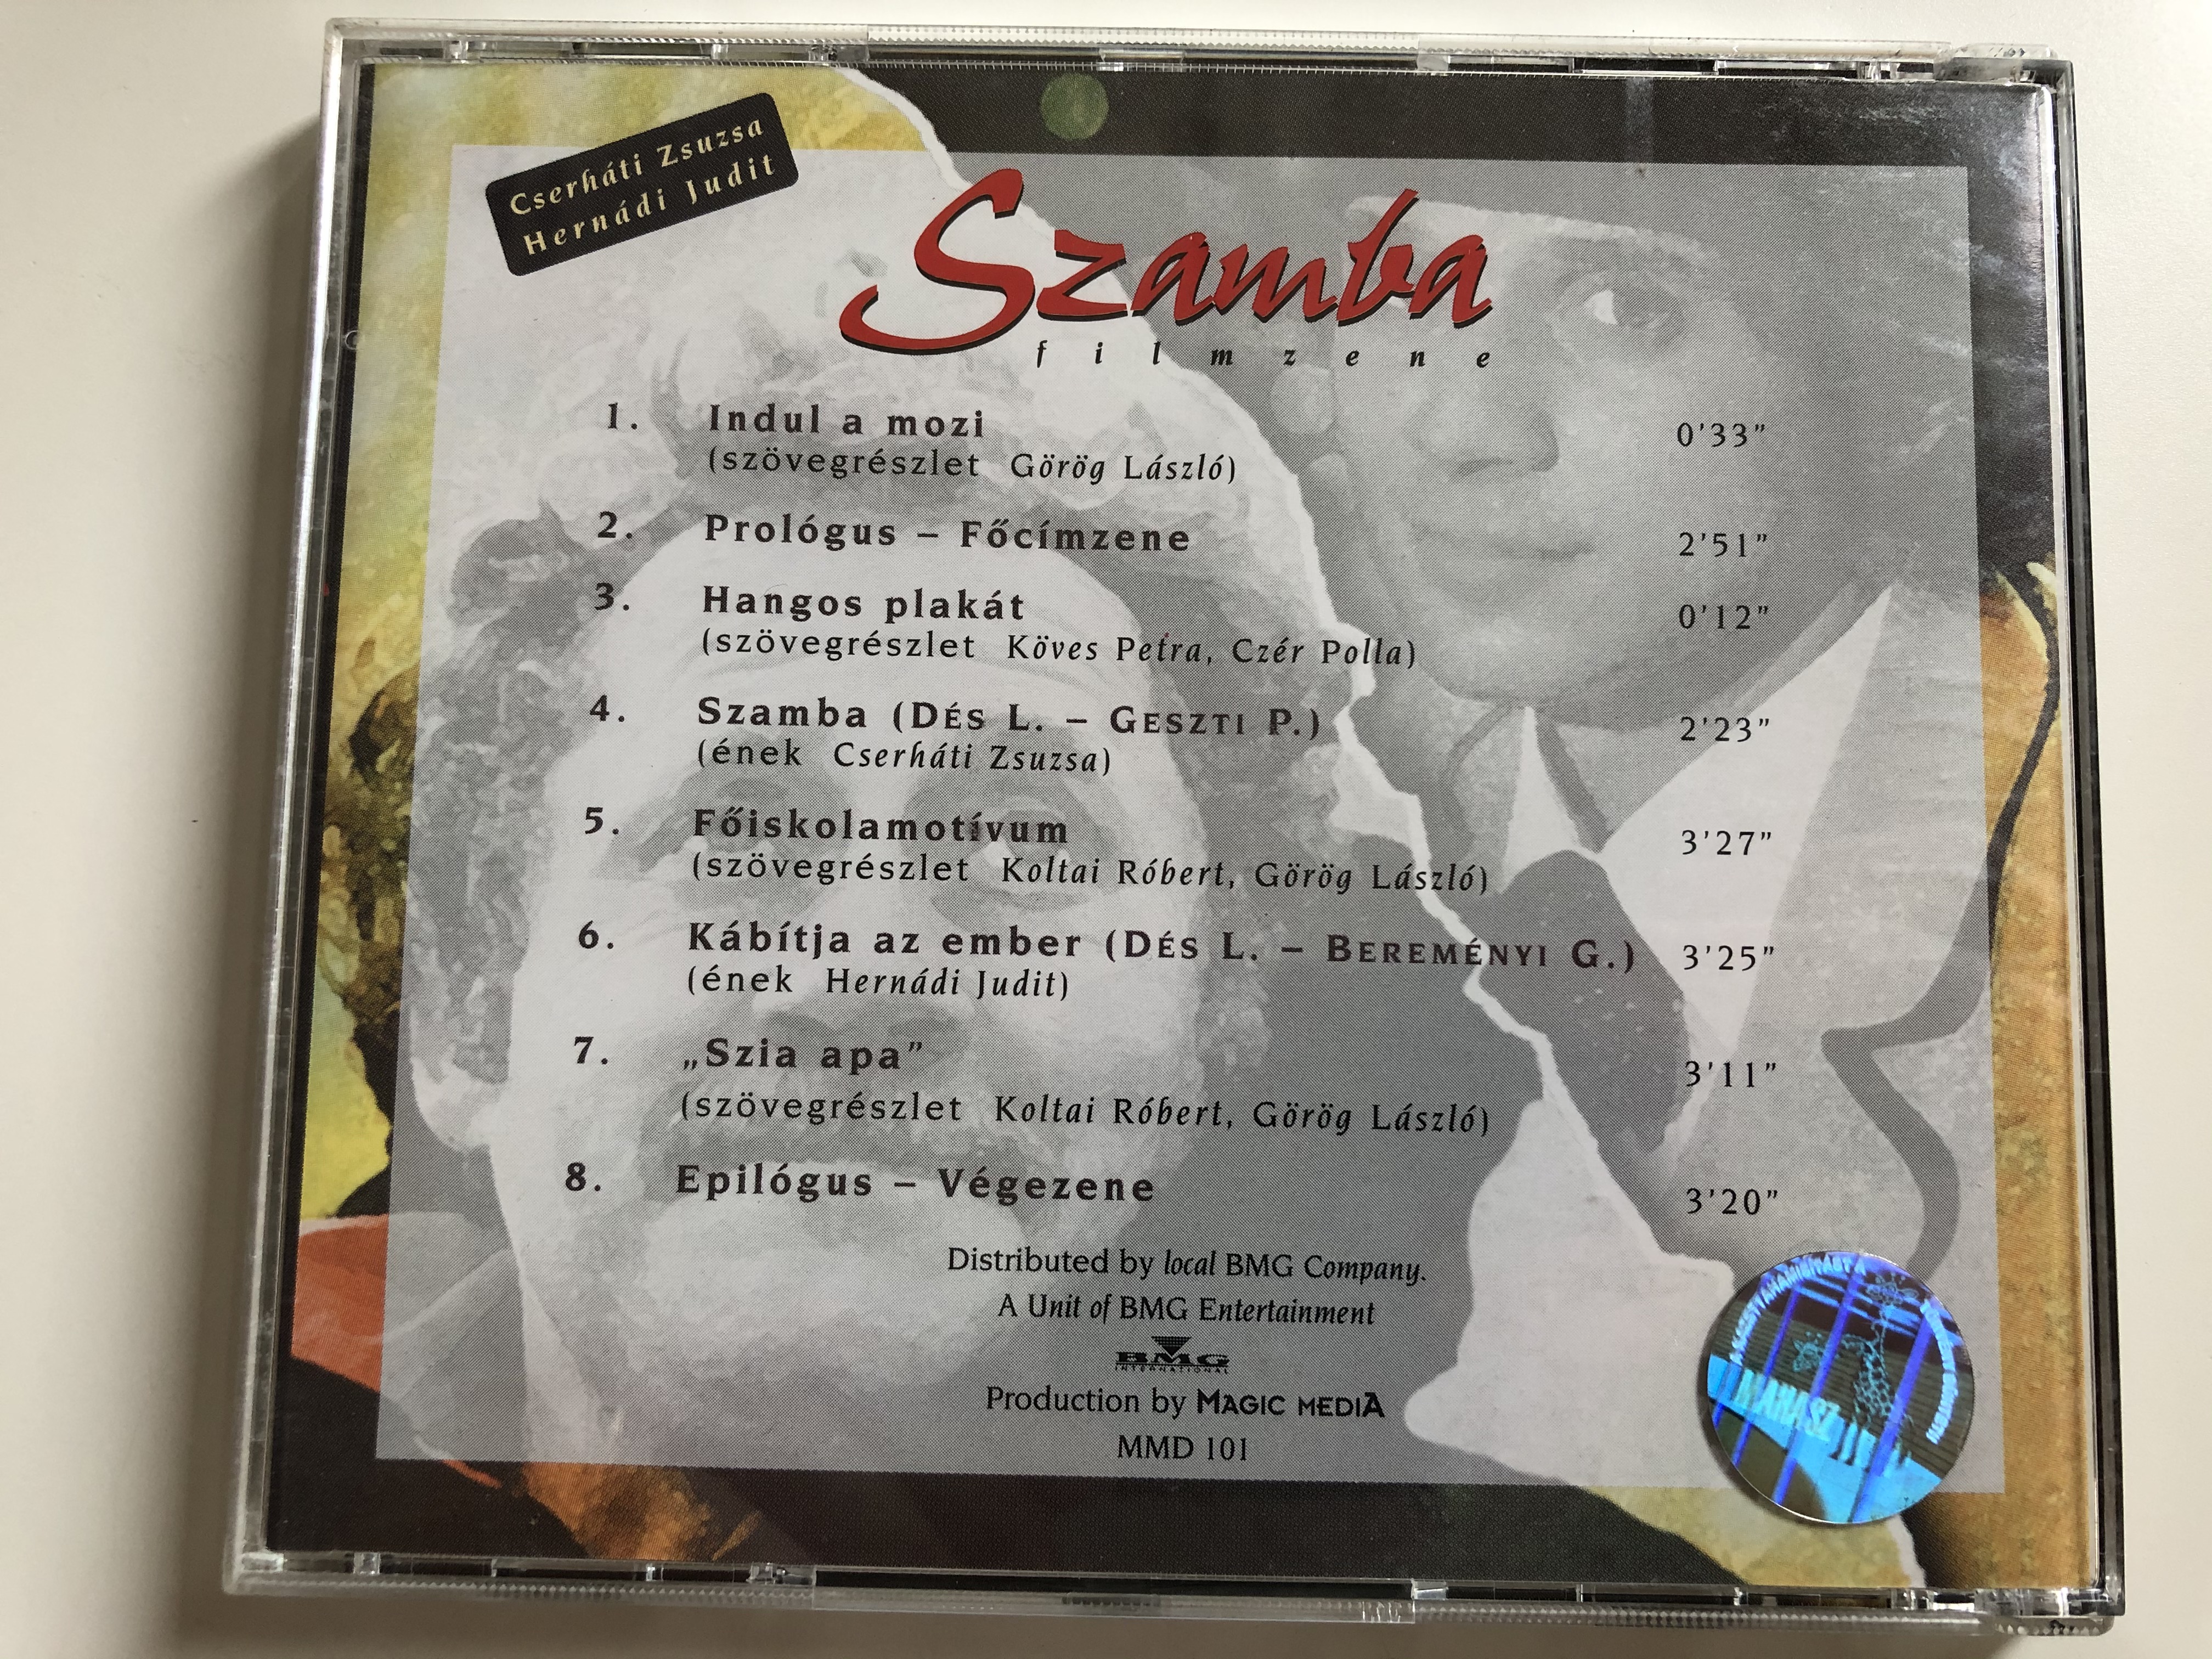 d-s-l-szl-szamba-koltai-robert-filmie-magic-media-audio-cd-1996-mmd-101-7-.jpg